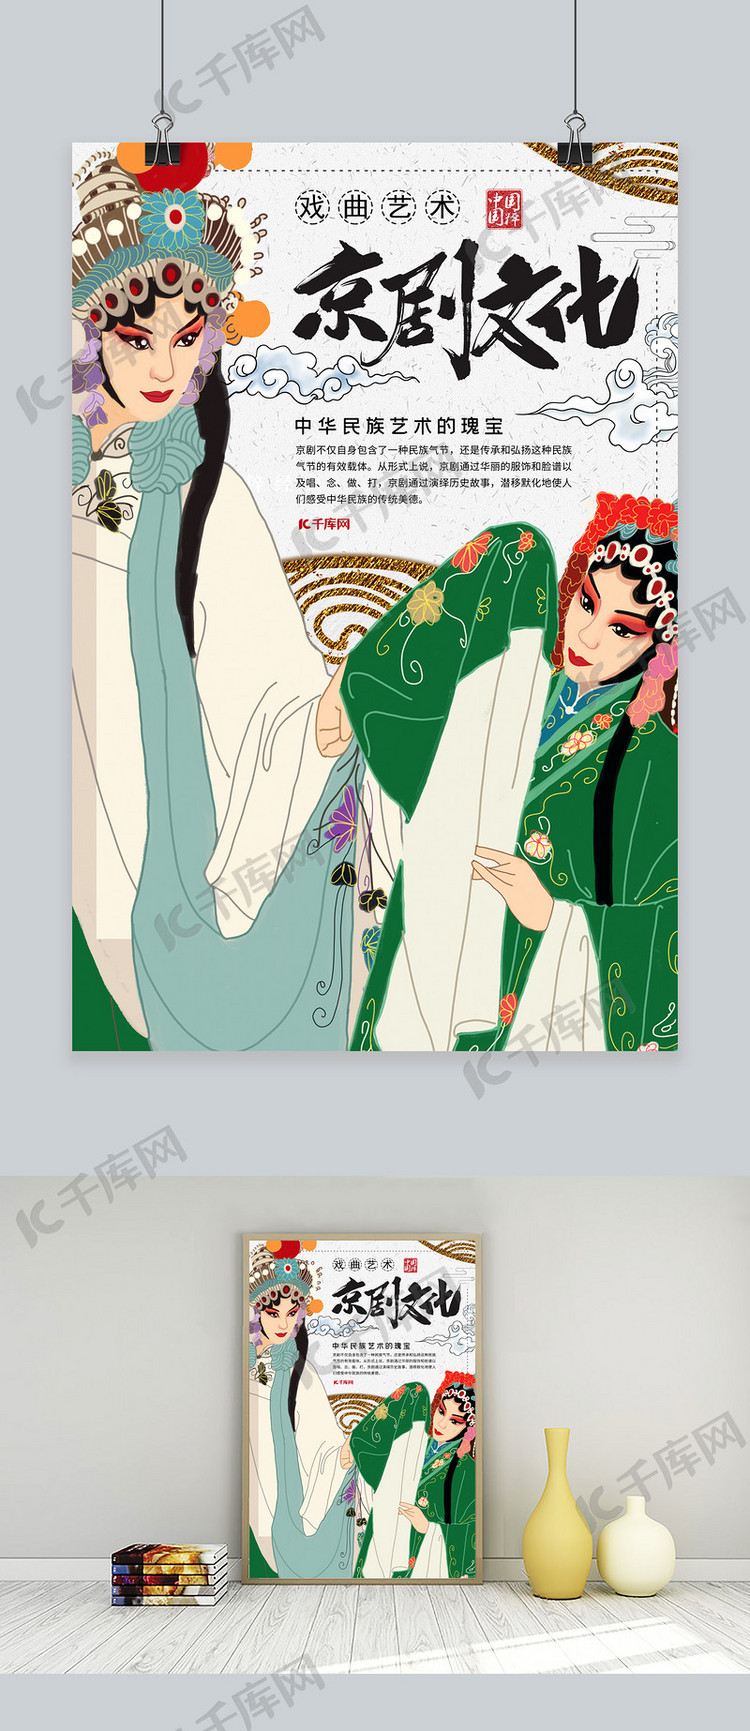 中国风京剧文化戏曲艺术宣传海报